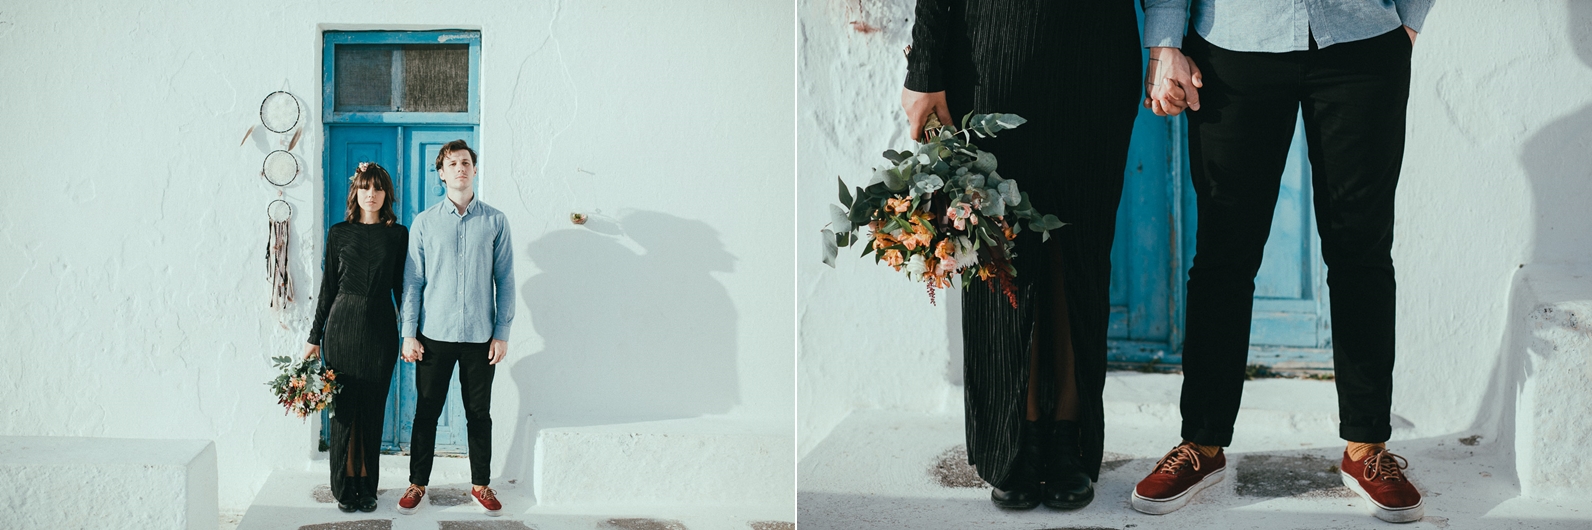 santorini-wedding-photographer (31).jpg